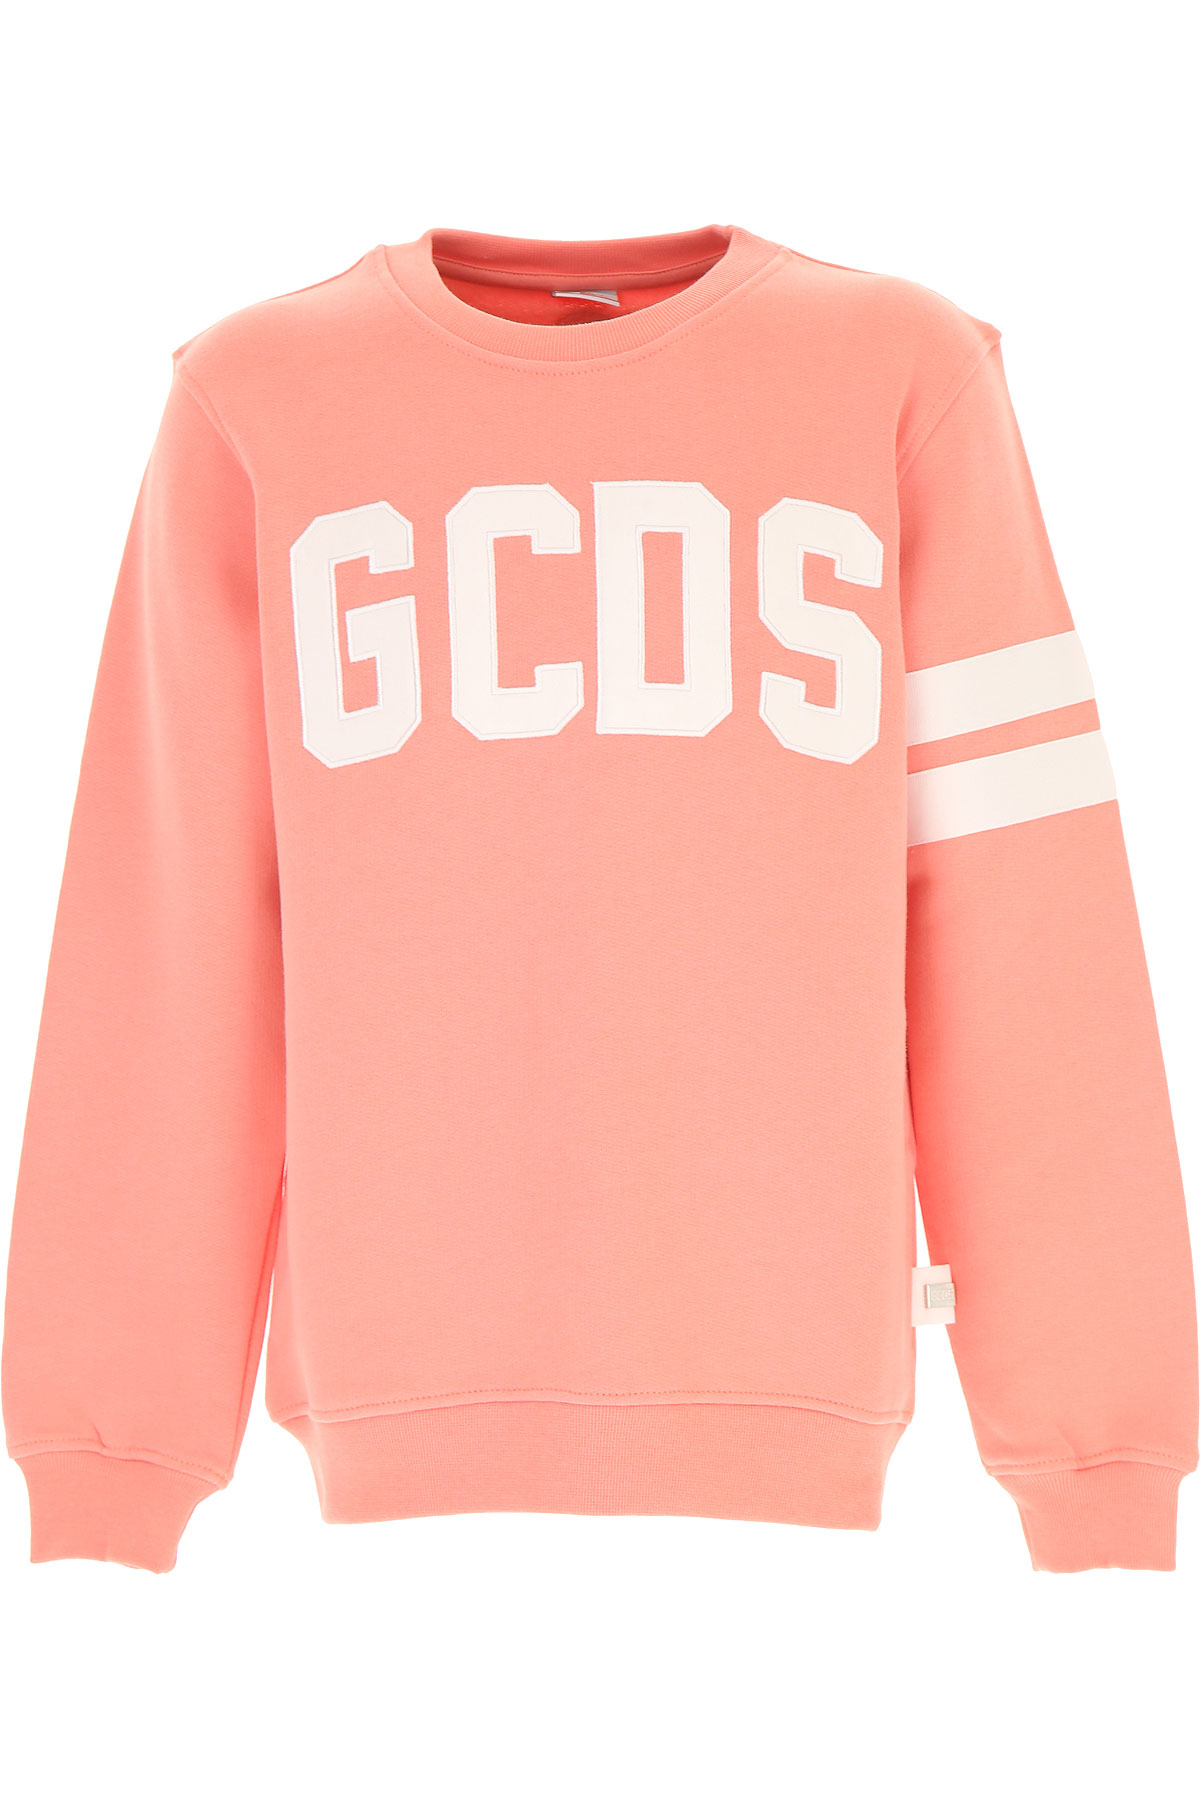 GCDS Kinder Sweatshirt & Kapuzenpullover für Mädchen Günstig im Sale, Pink, Baumwolle, 2017, 10Y 12Y 8Y